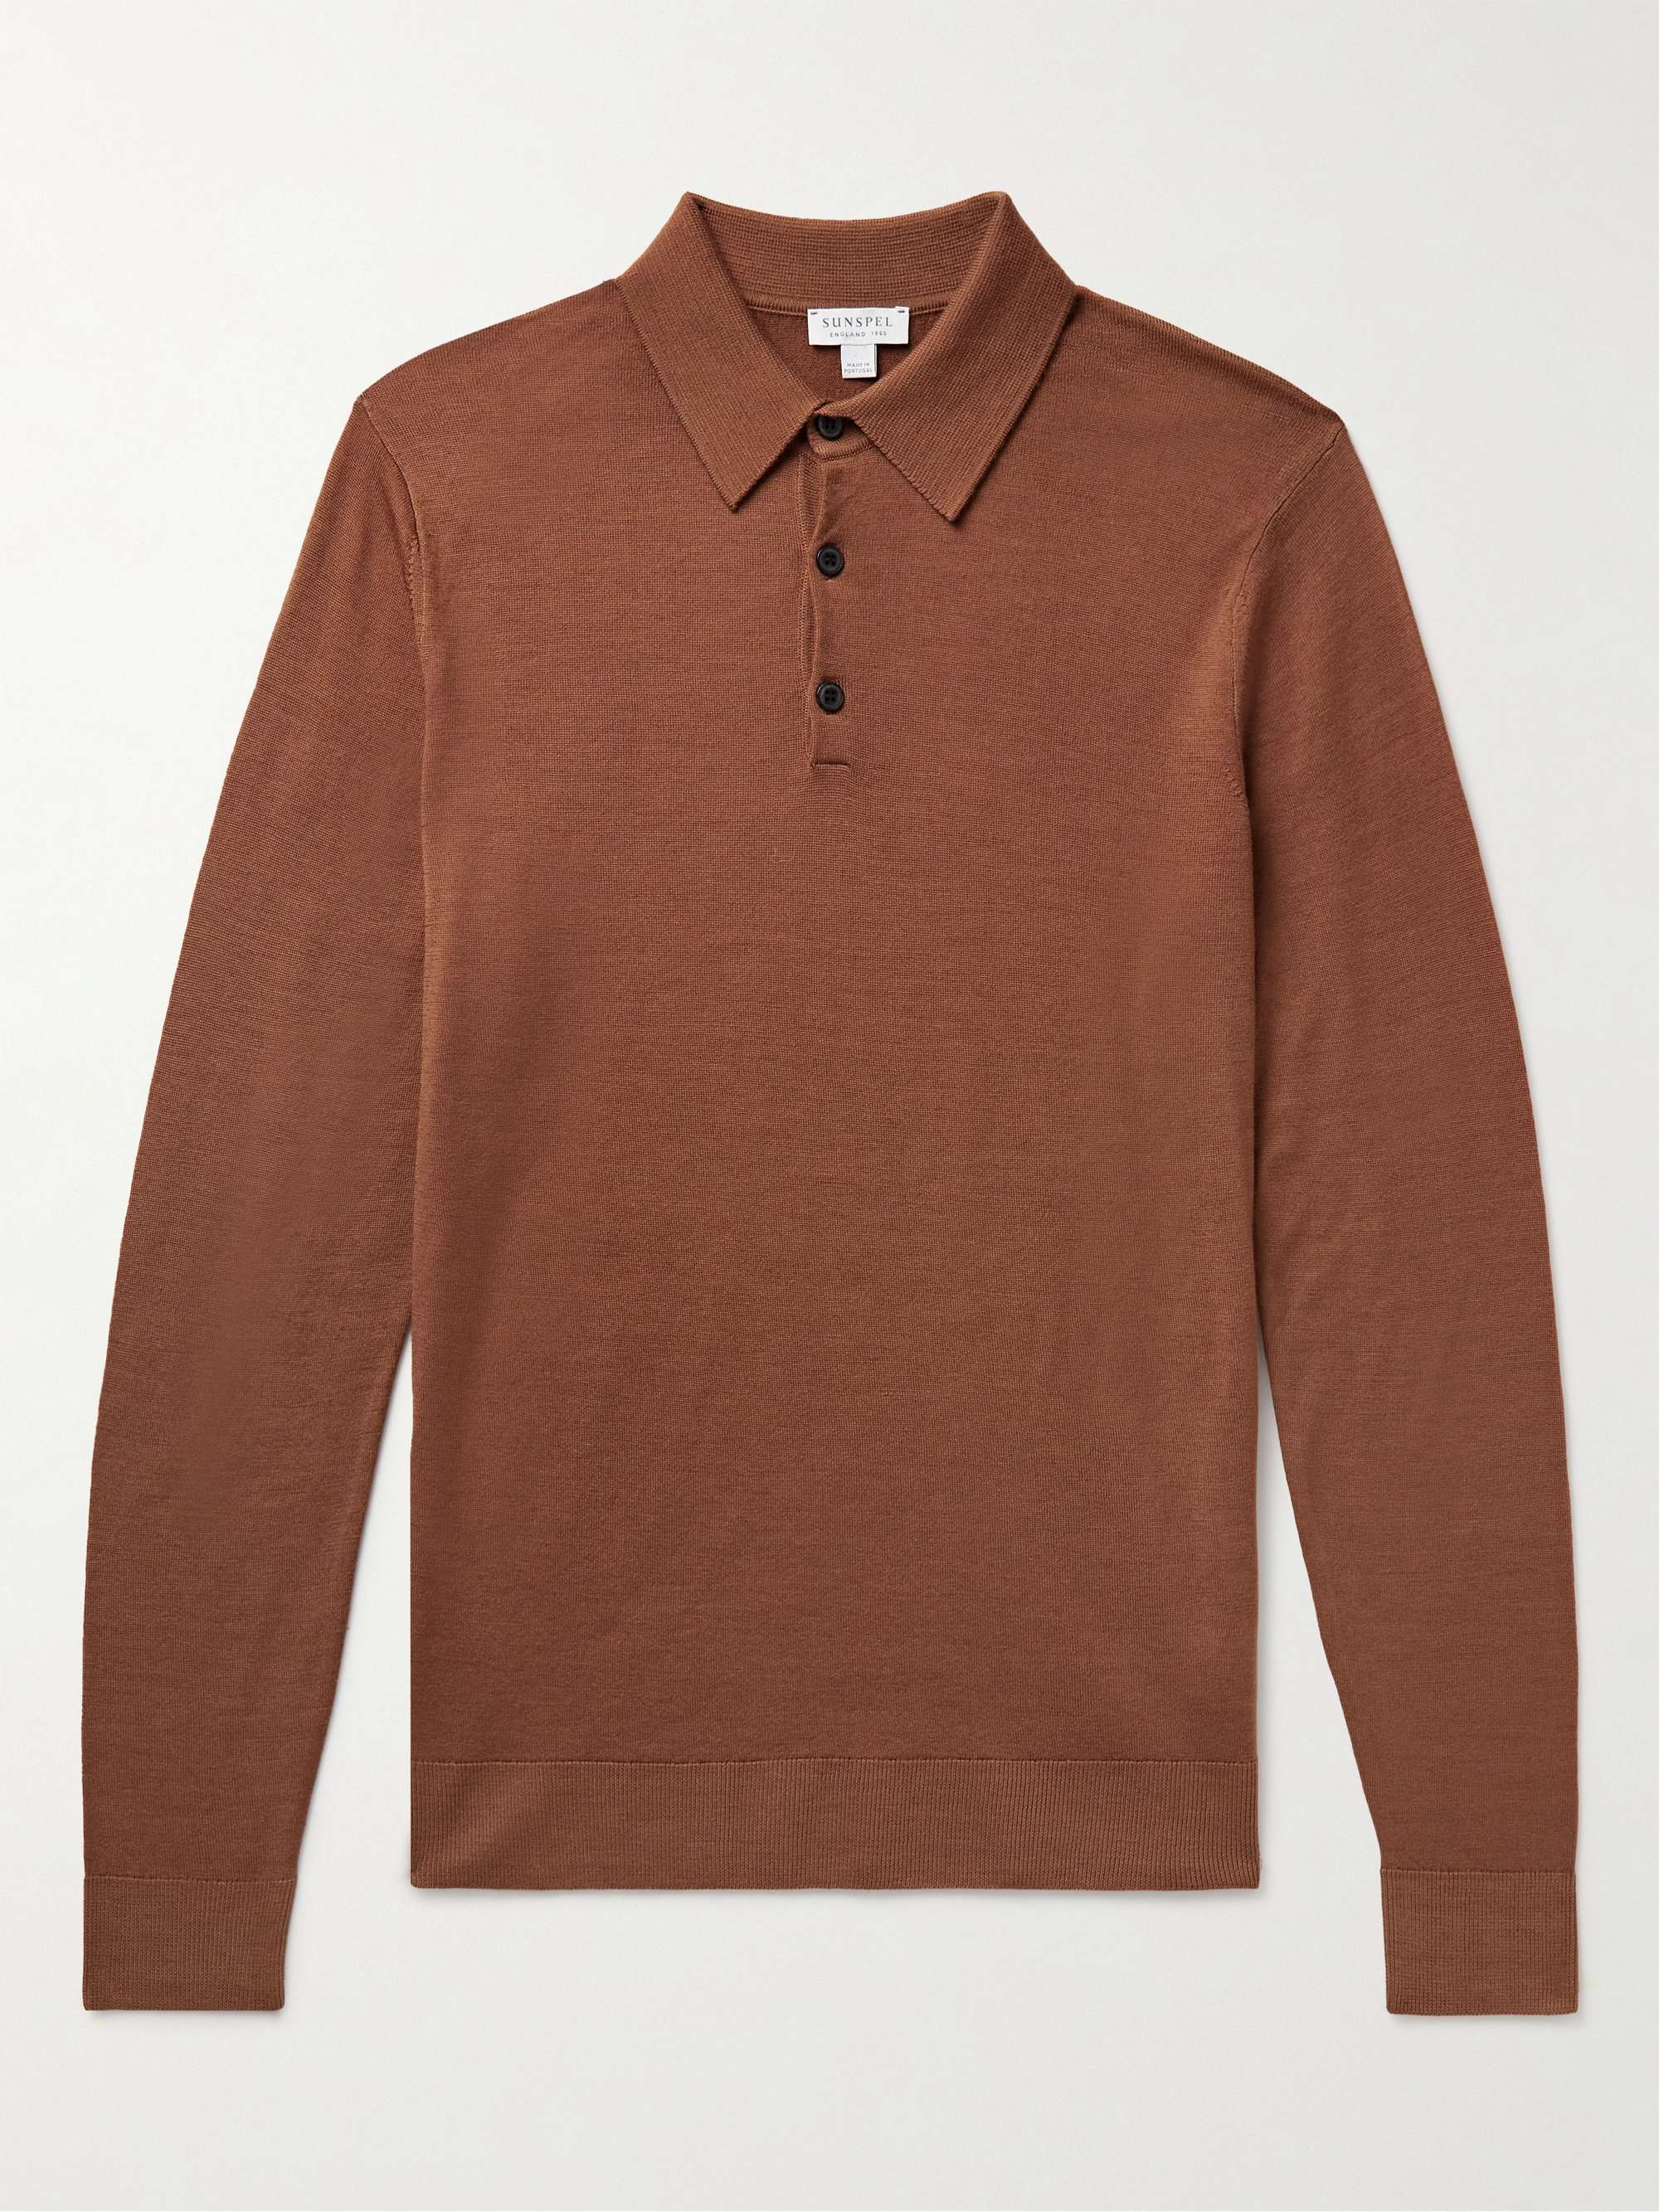 SUNSPEL Slim-Fit Merino Wool Polo Shirt for Men | MR PORTER